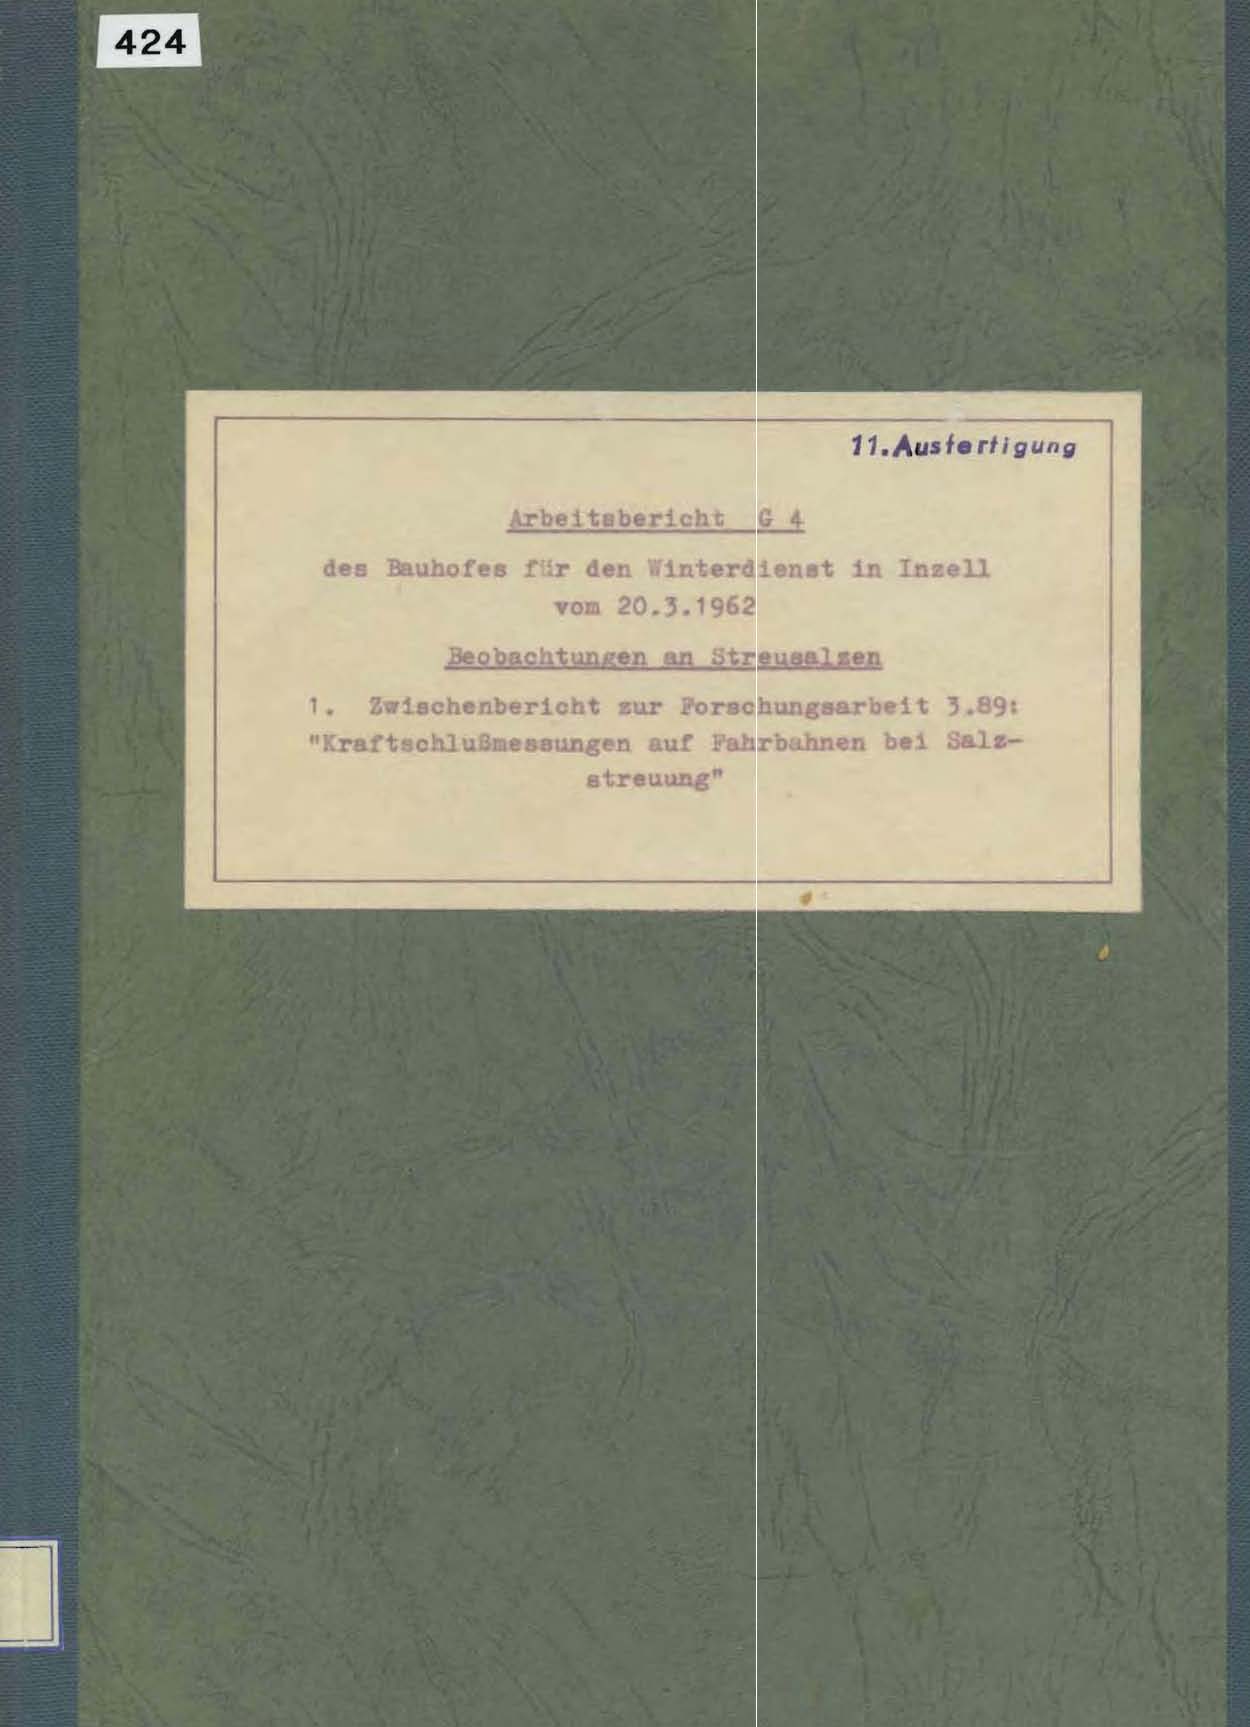 Arbeitsbericht G4 des Bauhofes für den Winterdienst in Inzell vom 20.3.1962